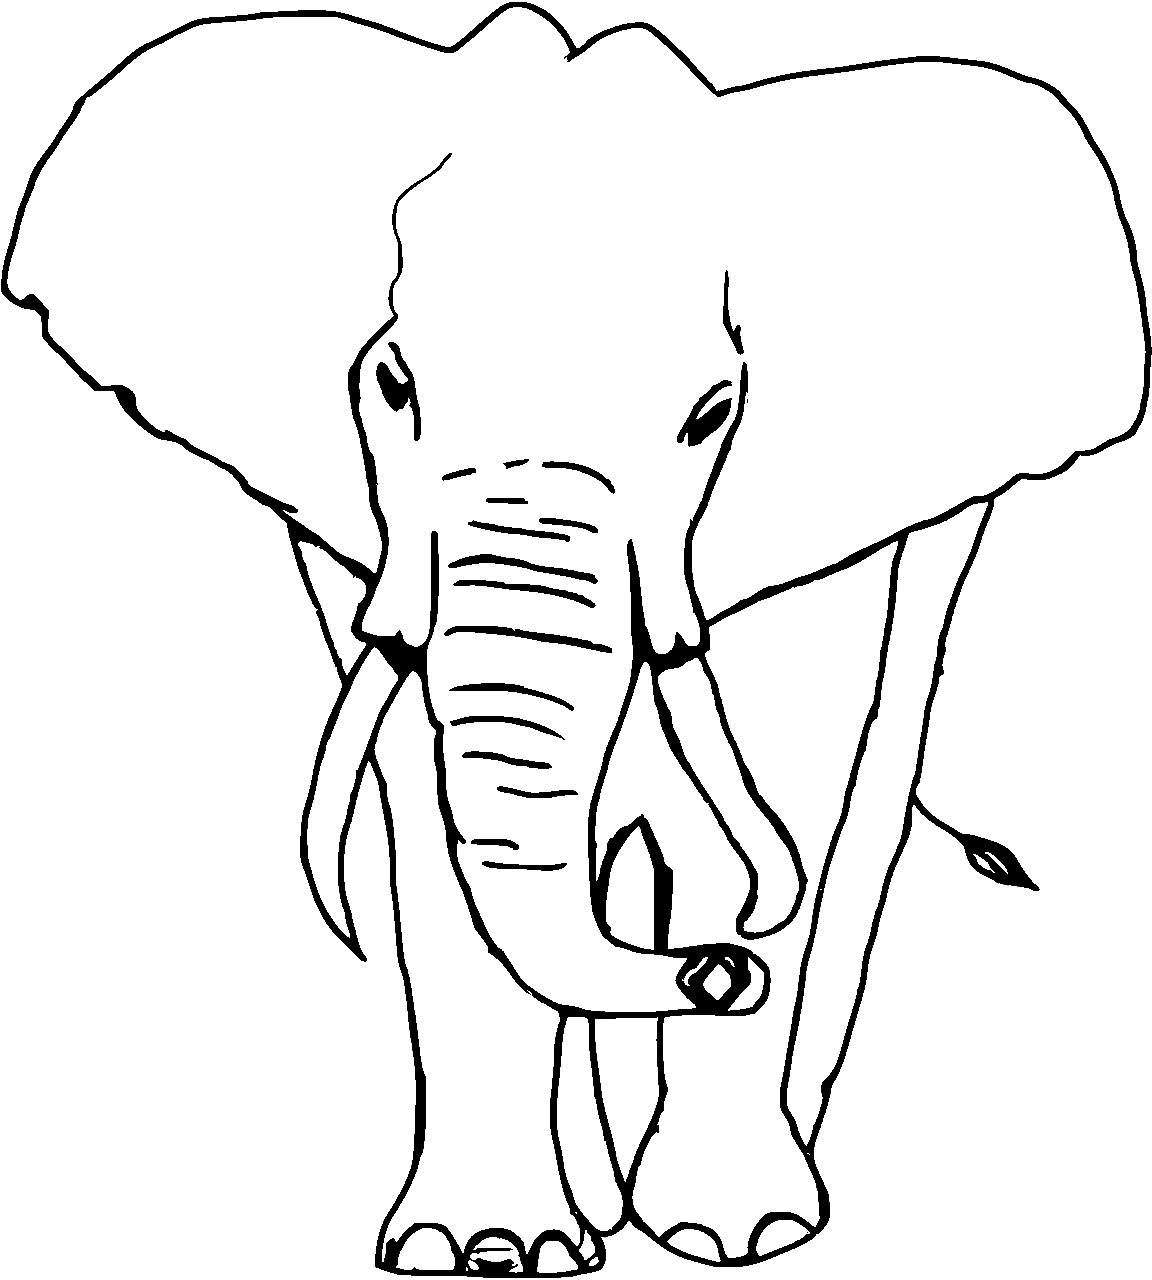 Disegno da colorare di elefante africano realistico frontale